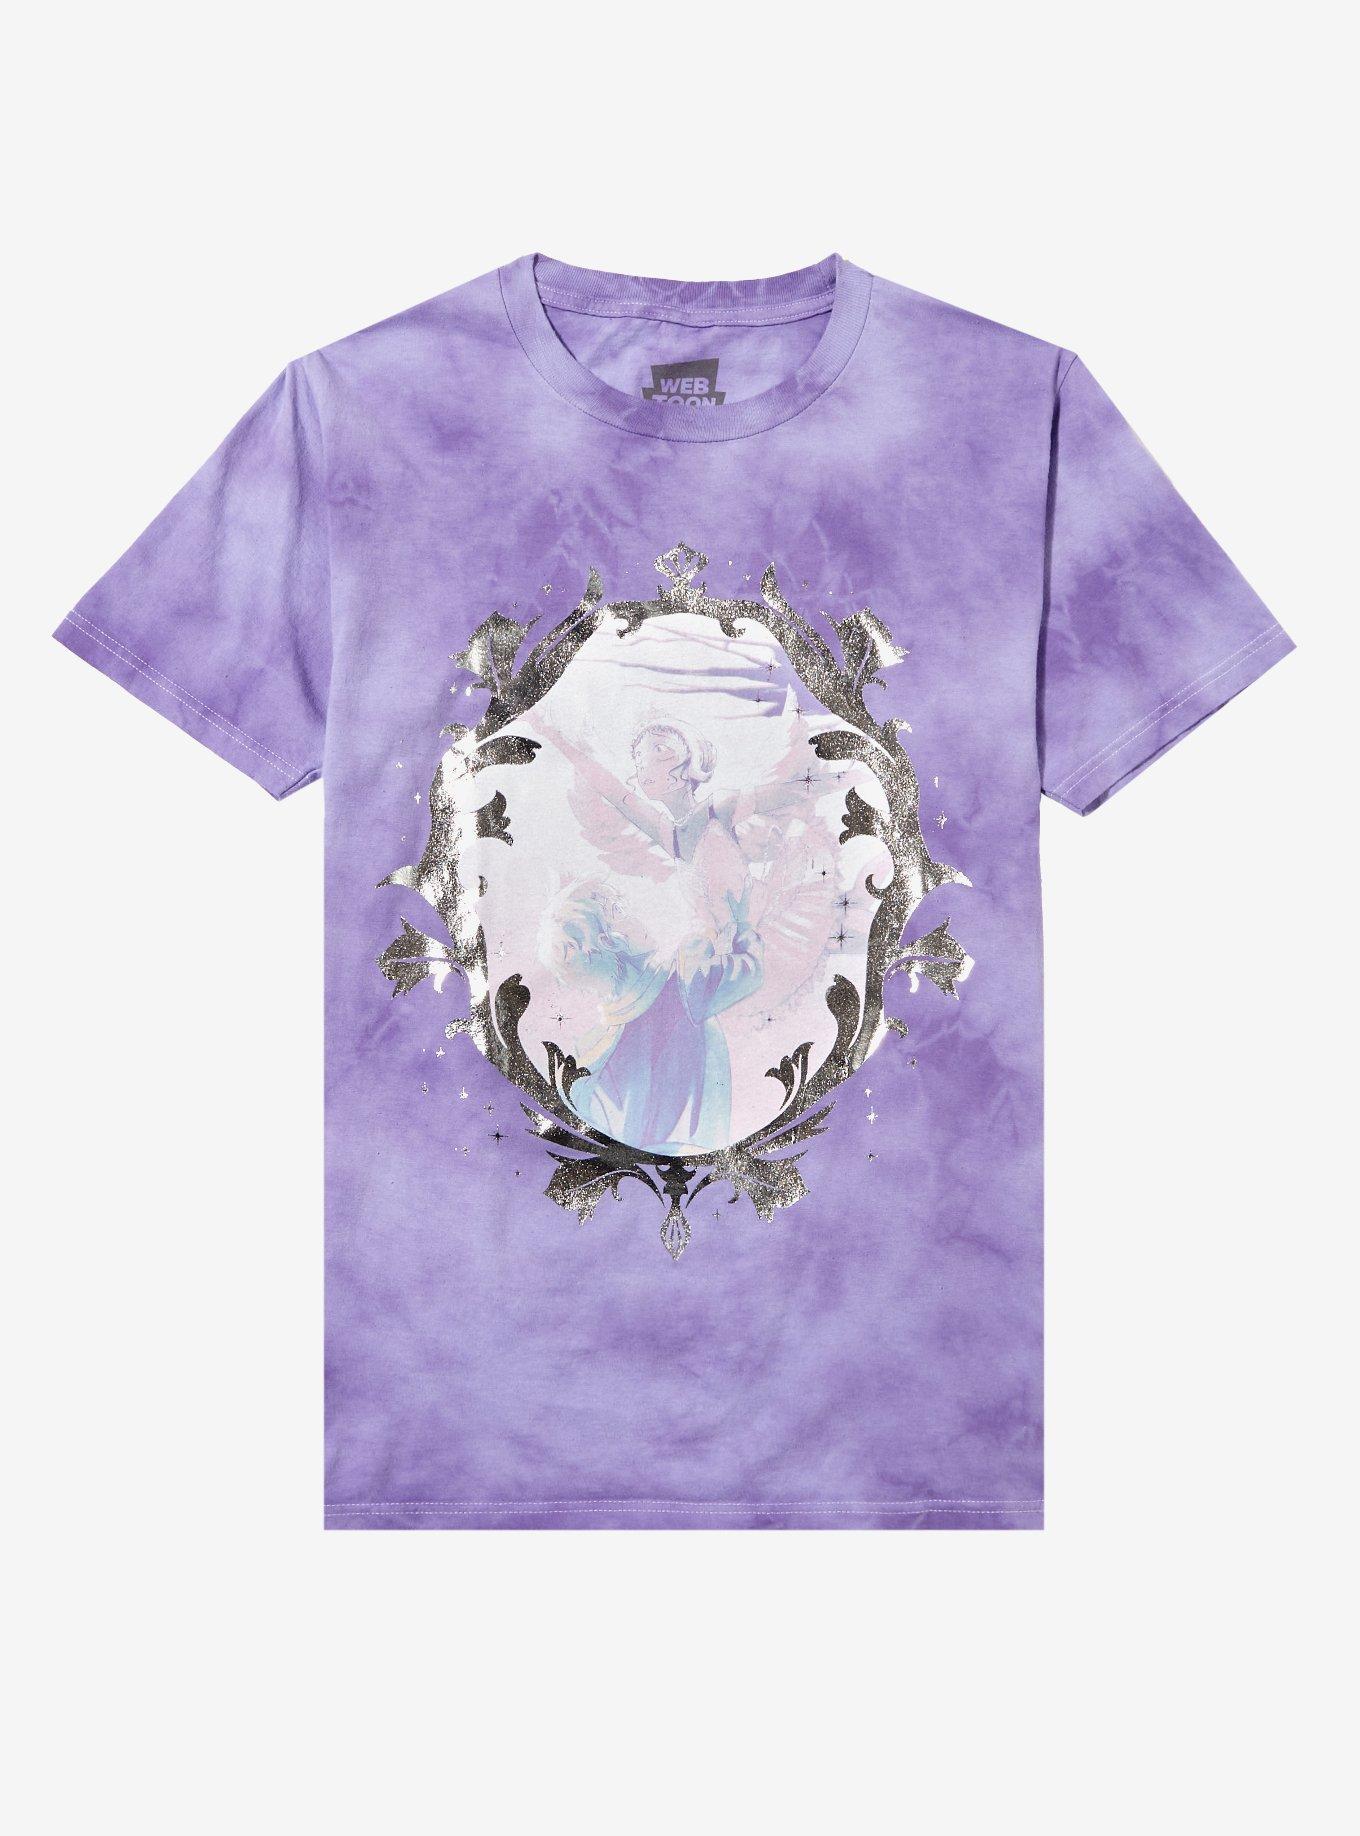 Cursed Princess Club Gwendolyn & Frederick Frame Foil Tie-Dye Boyfriend Fit Girls T-Shirt, MULTI, hi-res